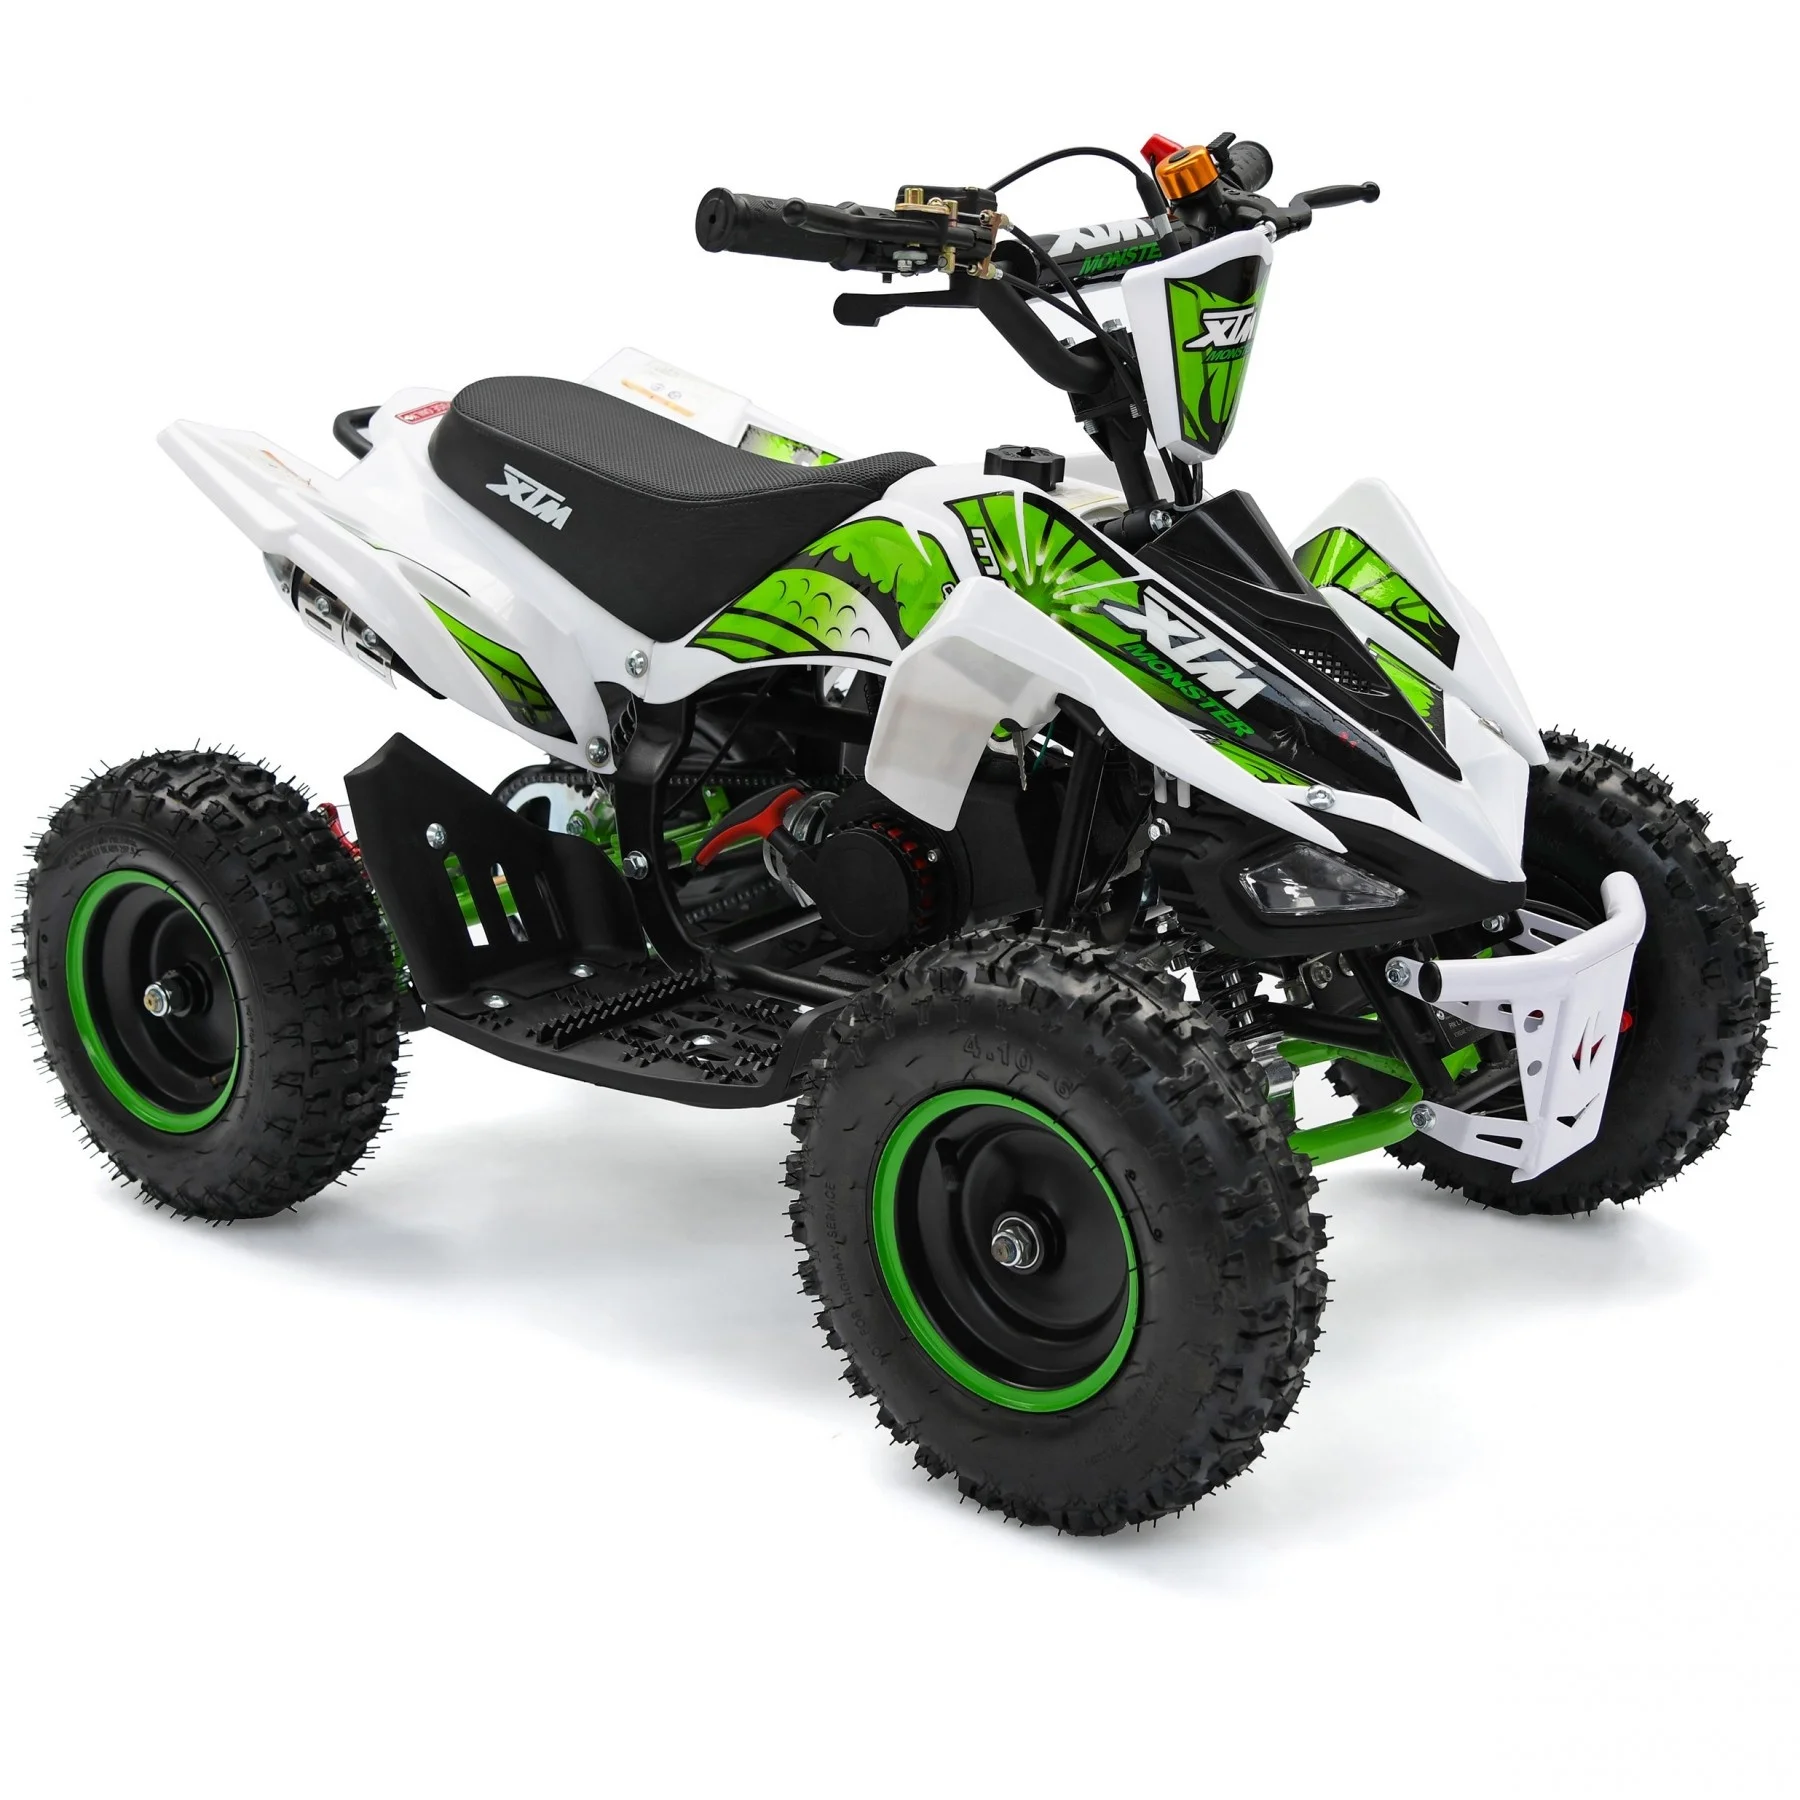 Mini quad ATV3 MOTOR DE 2 TIEMPO /49CC - Rodar Sports